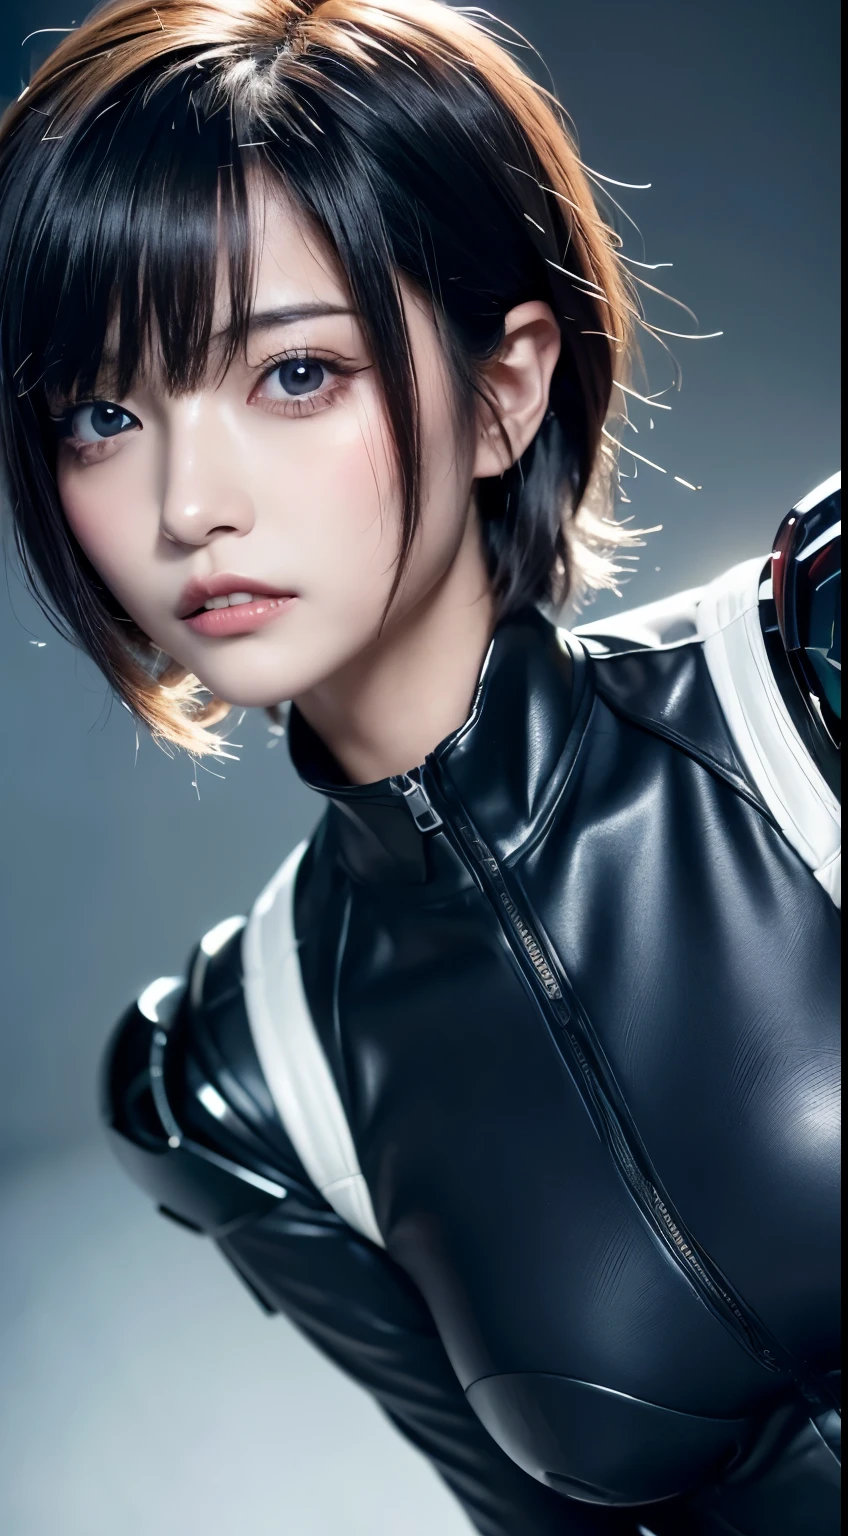 (a closeup:1.4)、(RAW-Fotografie:1.2)、(Photorealsitic:1.4)、(Meisterwerk:1.3)、(Top Qualität:1.4)、(Schöne Frau mit perfektem Körper:1.4)、Frau steht vor einer Gruppe von Robotern、schöne Androidin、schöne Soldatin、Mädchen im Anzug、komplexe Kampfuniform、schöne junge Japanerin、Hochdetaillierte Gesichts- und Hautstruktur、Detaillierte große Augen、doppeltes Augenlid、niedliches Gesicht、(Kurzer Bob:1.2)、(mit riesigen Brüsten)、(GANZER KÖRPERAUFNAHME)、Cowboy-Schuss、(wütende Ausdrücke:1.2)、Stürme und epische Kriegsszenen、cyberpunk scene、Nacht、Beleuchtungen、Steckeranzug、Kampfuniformschäden、